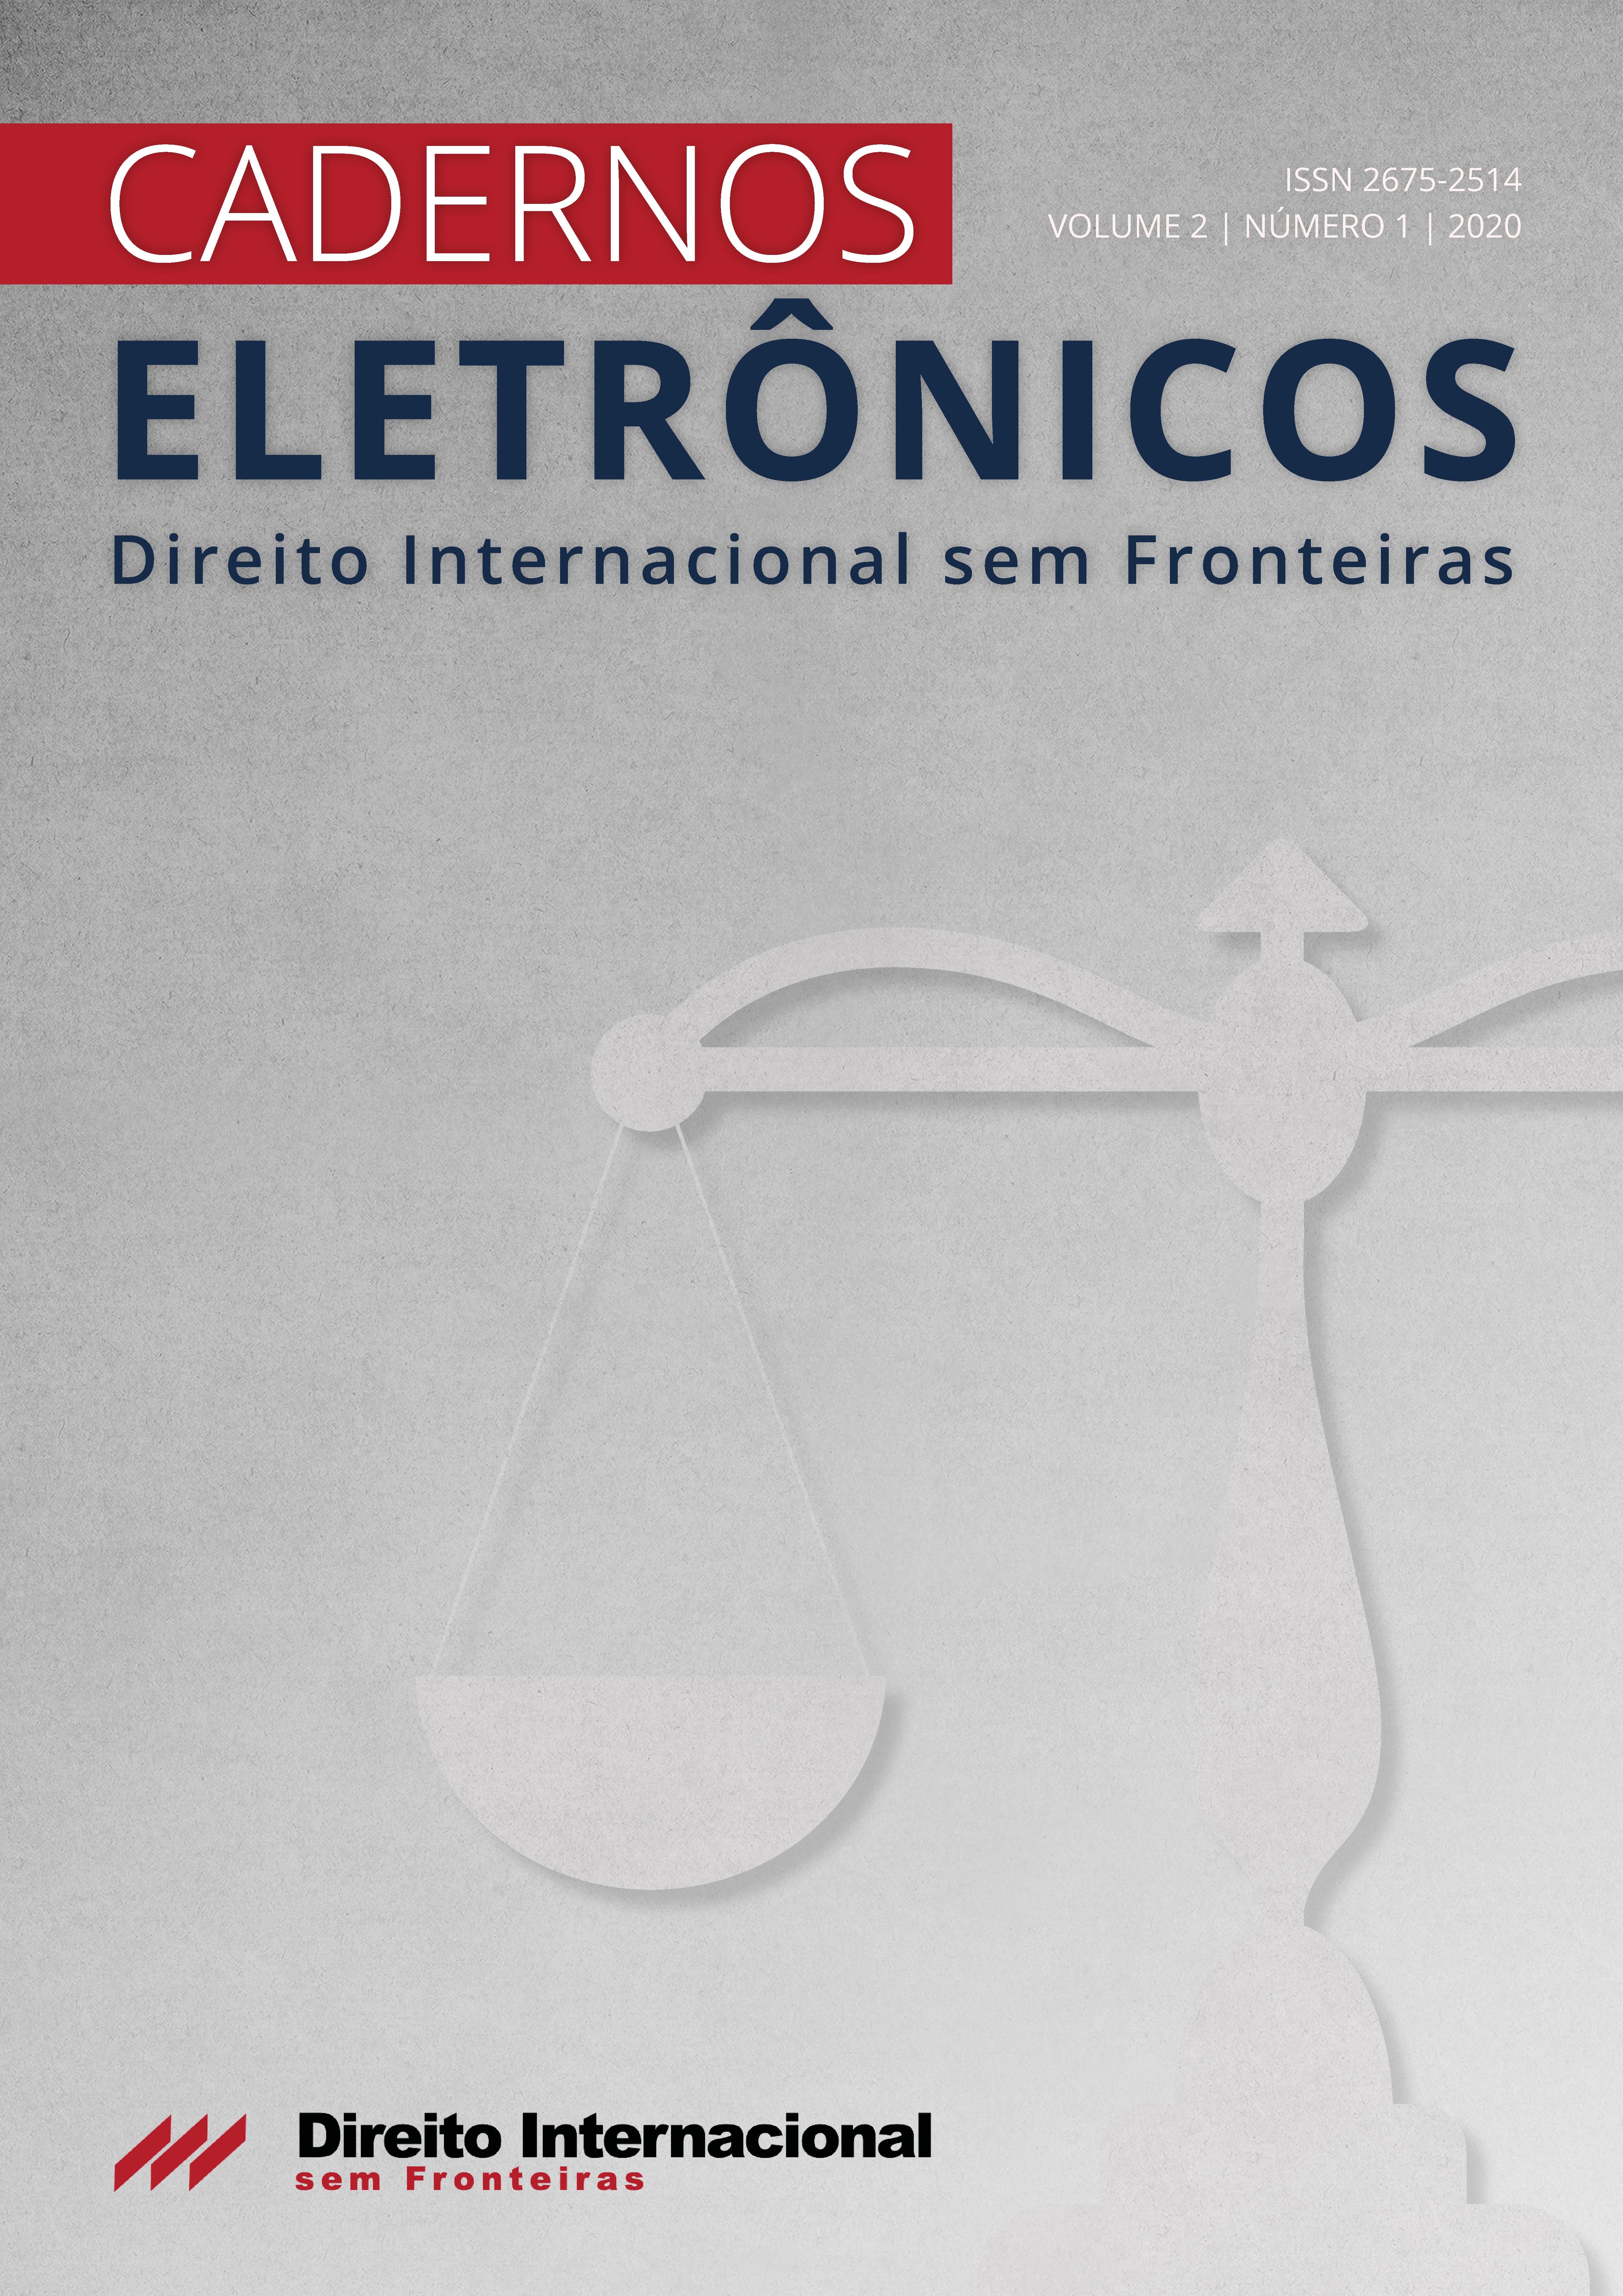 Cadernos Eletrônicos Direito Internacional sem Fronteiras, volume 2, número 1, 2020